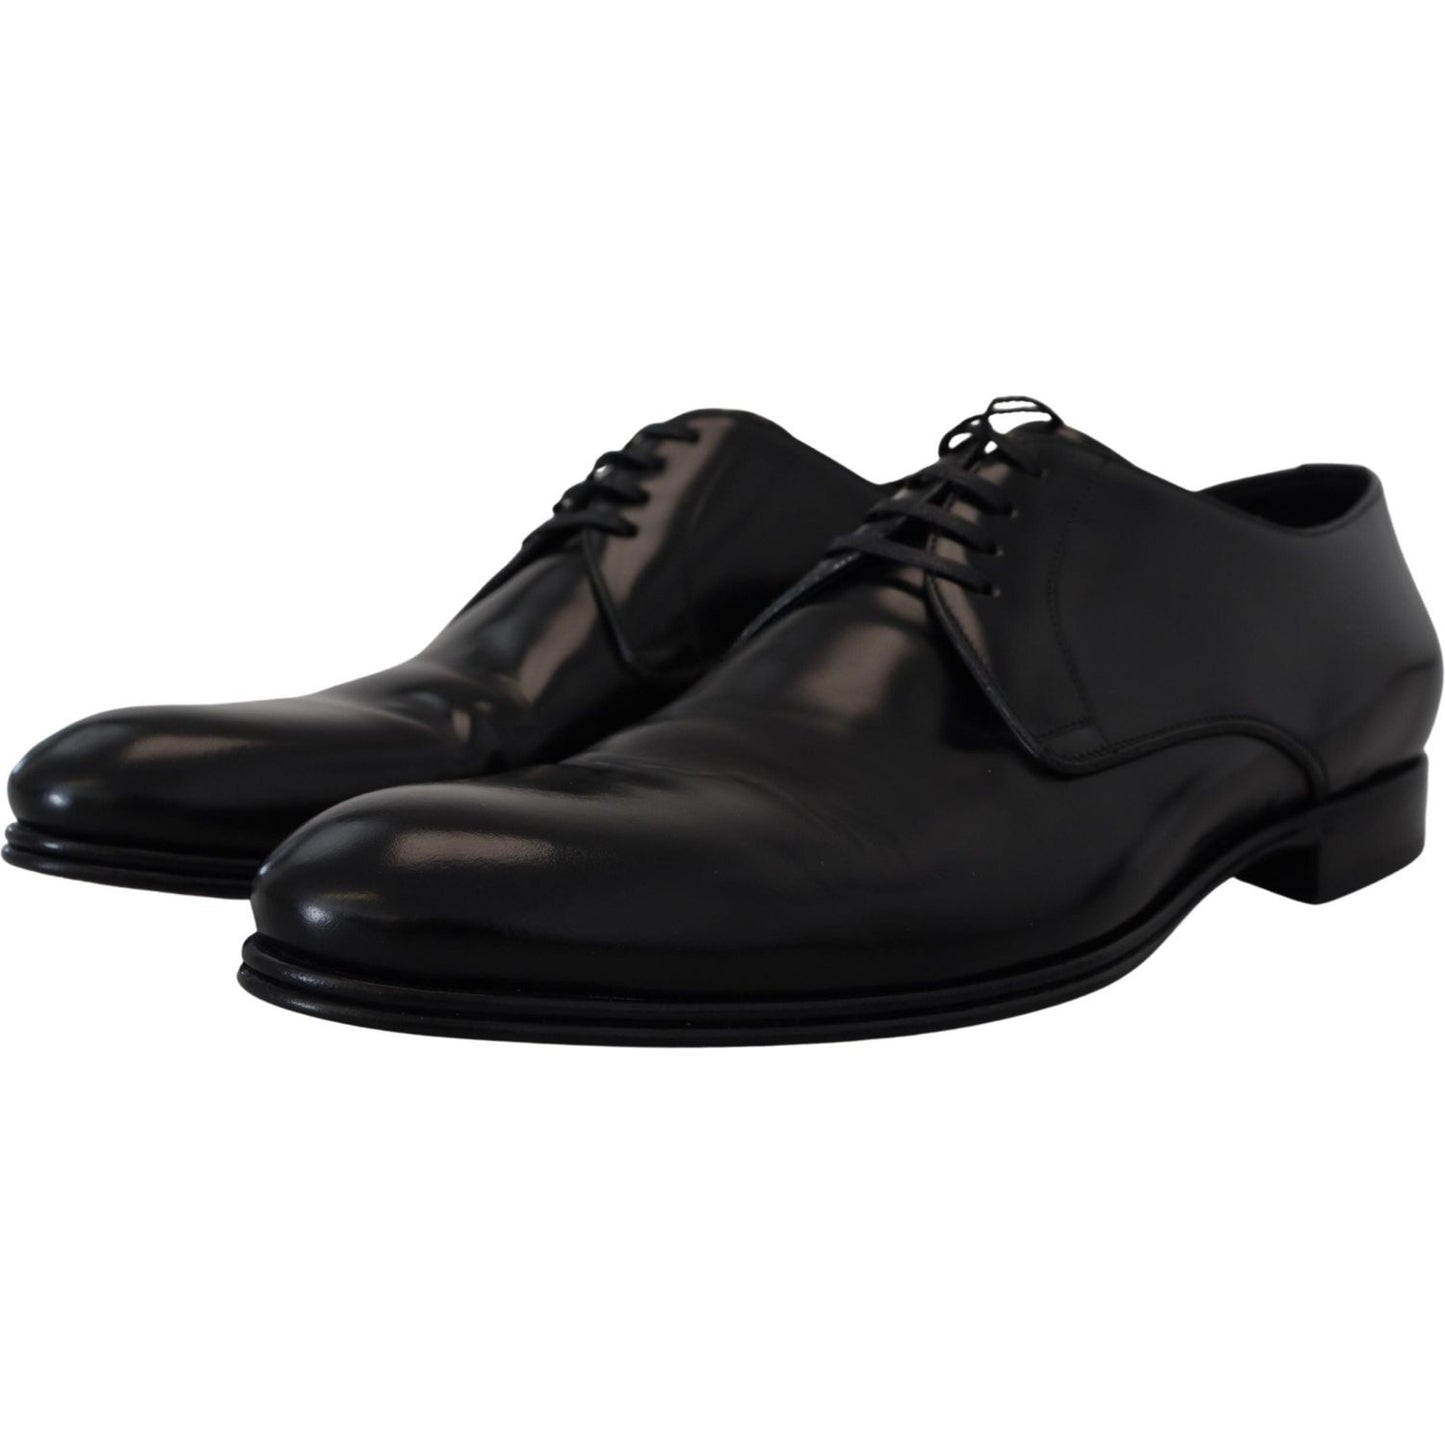 Dolce & Gabbana | Elegant Black Leather Derby Shoes| McRichard Designer Brands   